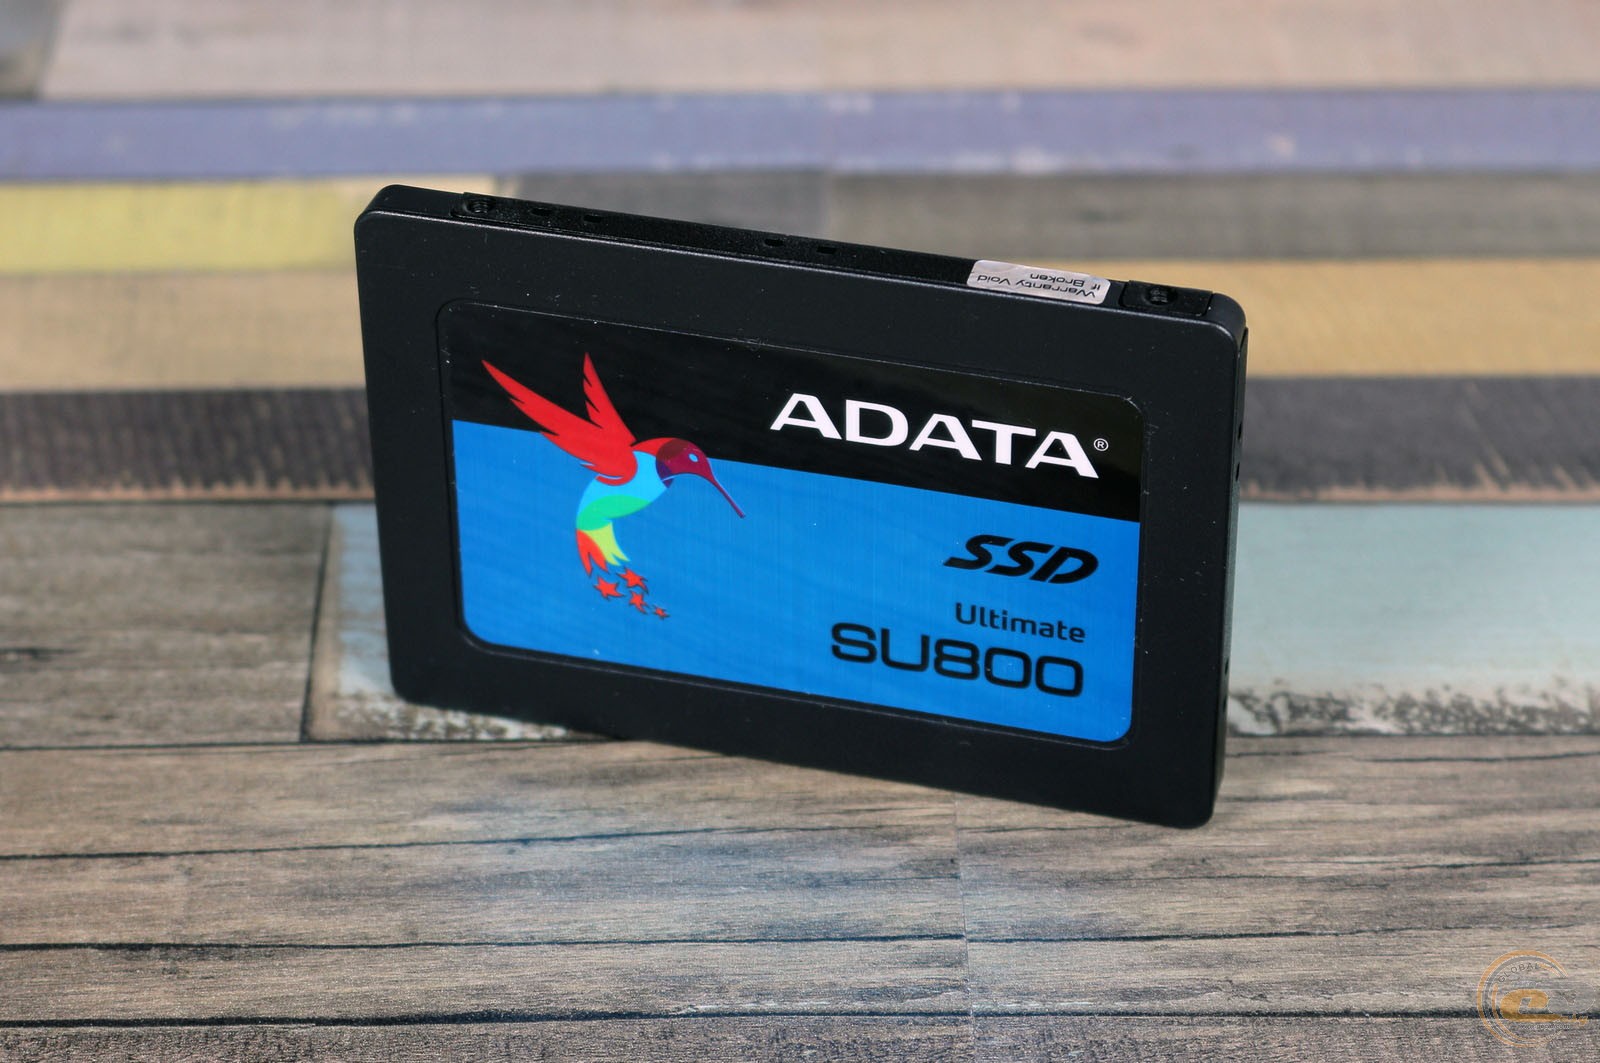 Adata ultimate su800. Asu800ss-256gt-c. A data su800 256gb. Твердотельный накопитель (SSD) 256 ADATA Ultimate su800 asu800ss-256gt-c SATA. Ссд диск АДАТА су800.